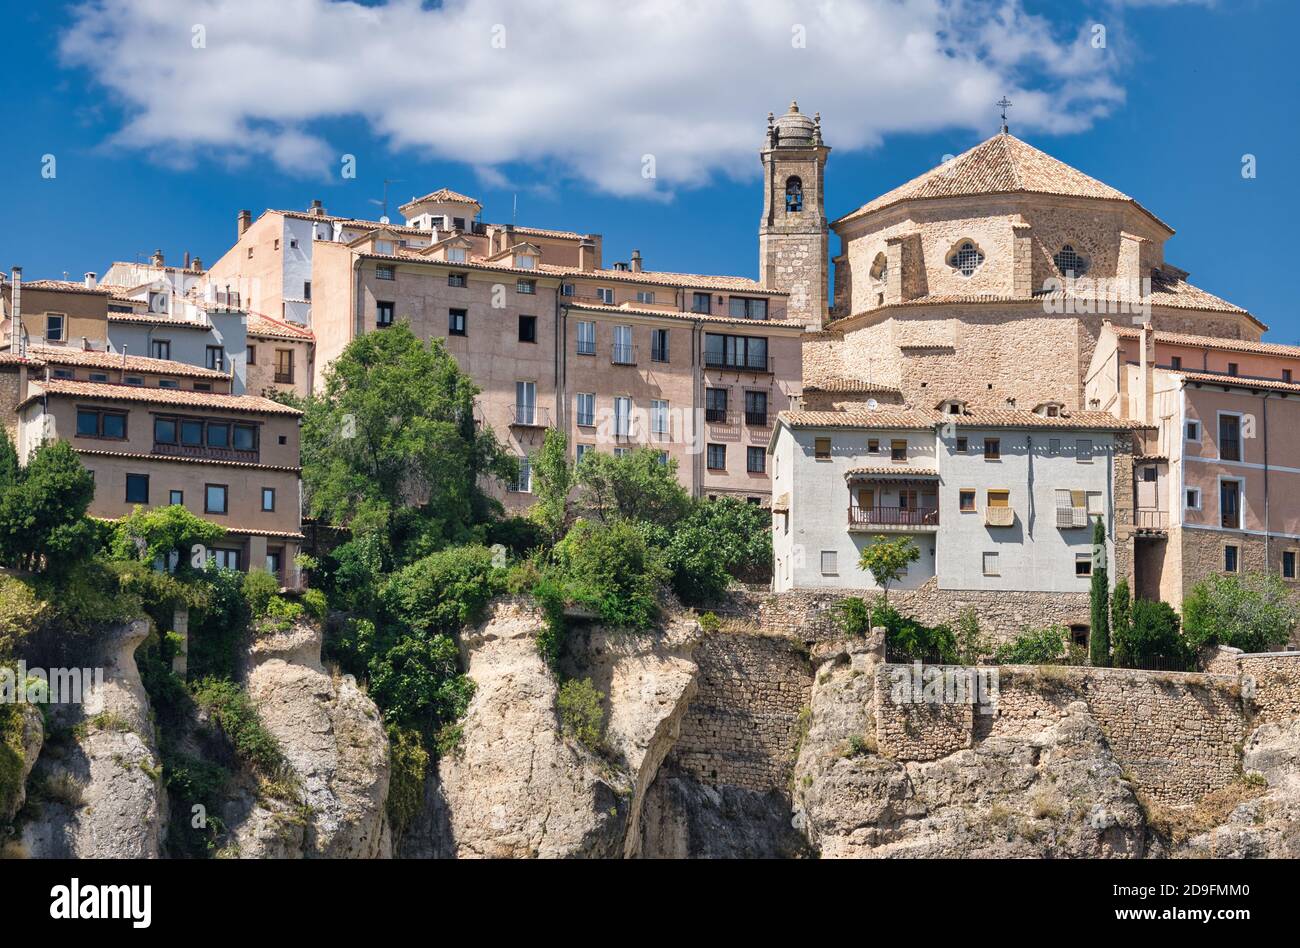 Clocher et dôme de la cathédrale de Cuenca vu du point de vue du touriste national parador, Espagne Banque D'Images